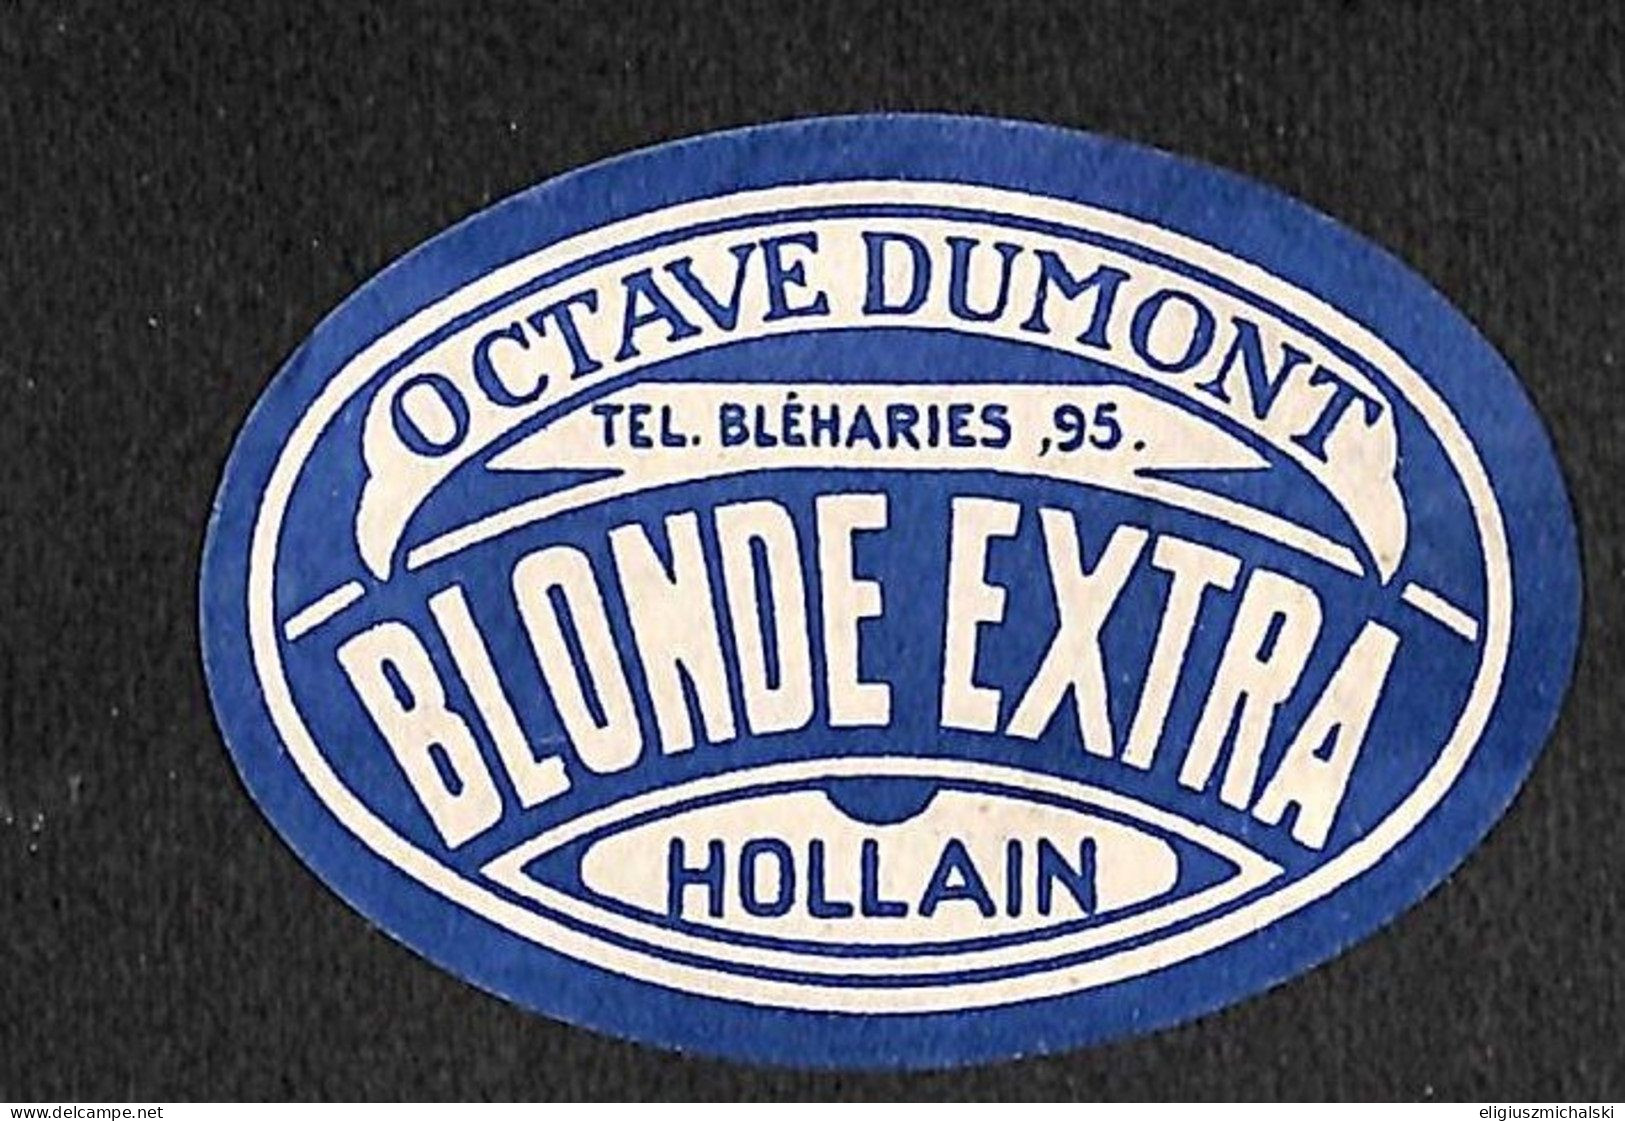 Hollain - Dumont Octave Blonde Extra - Bière